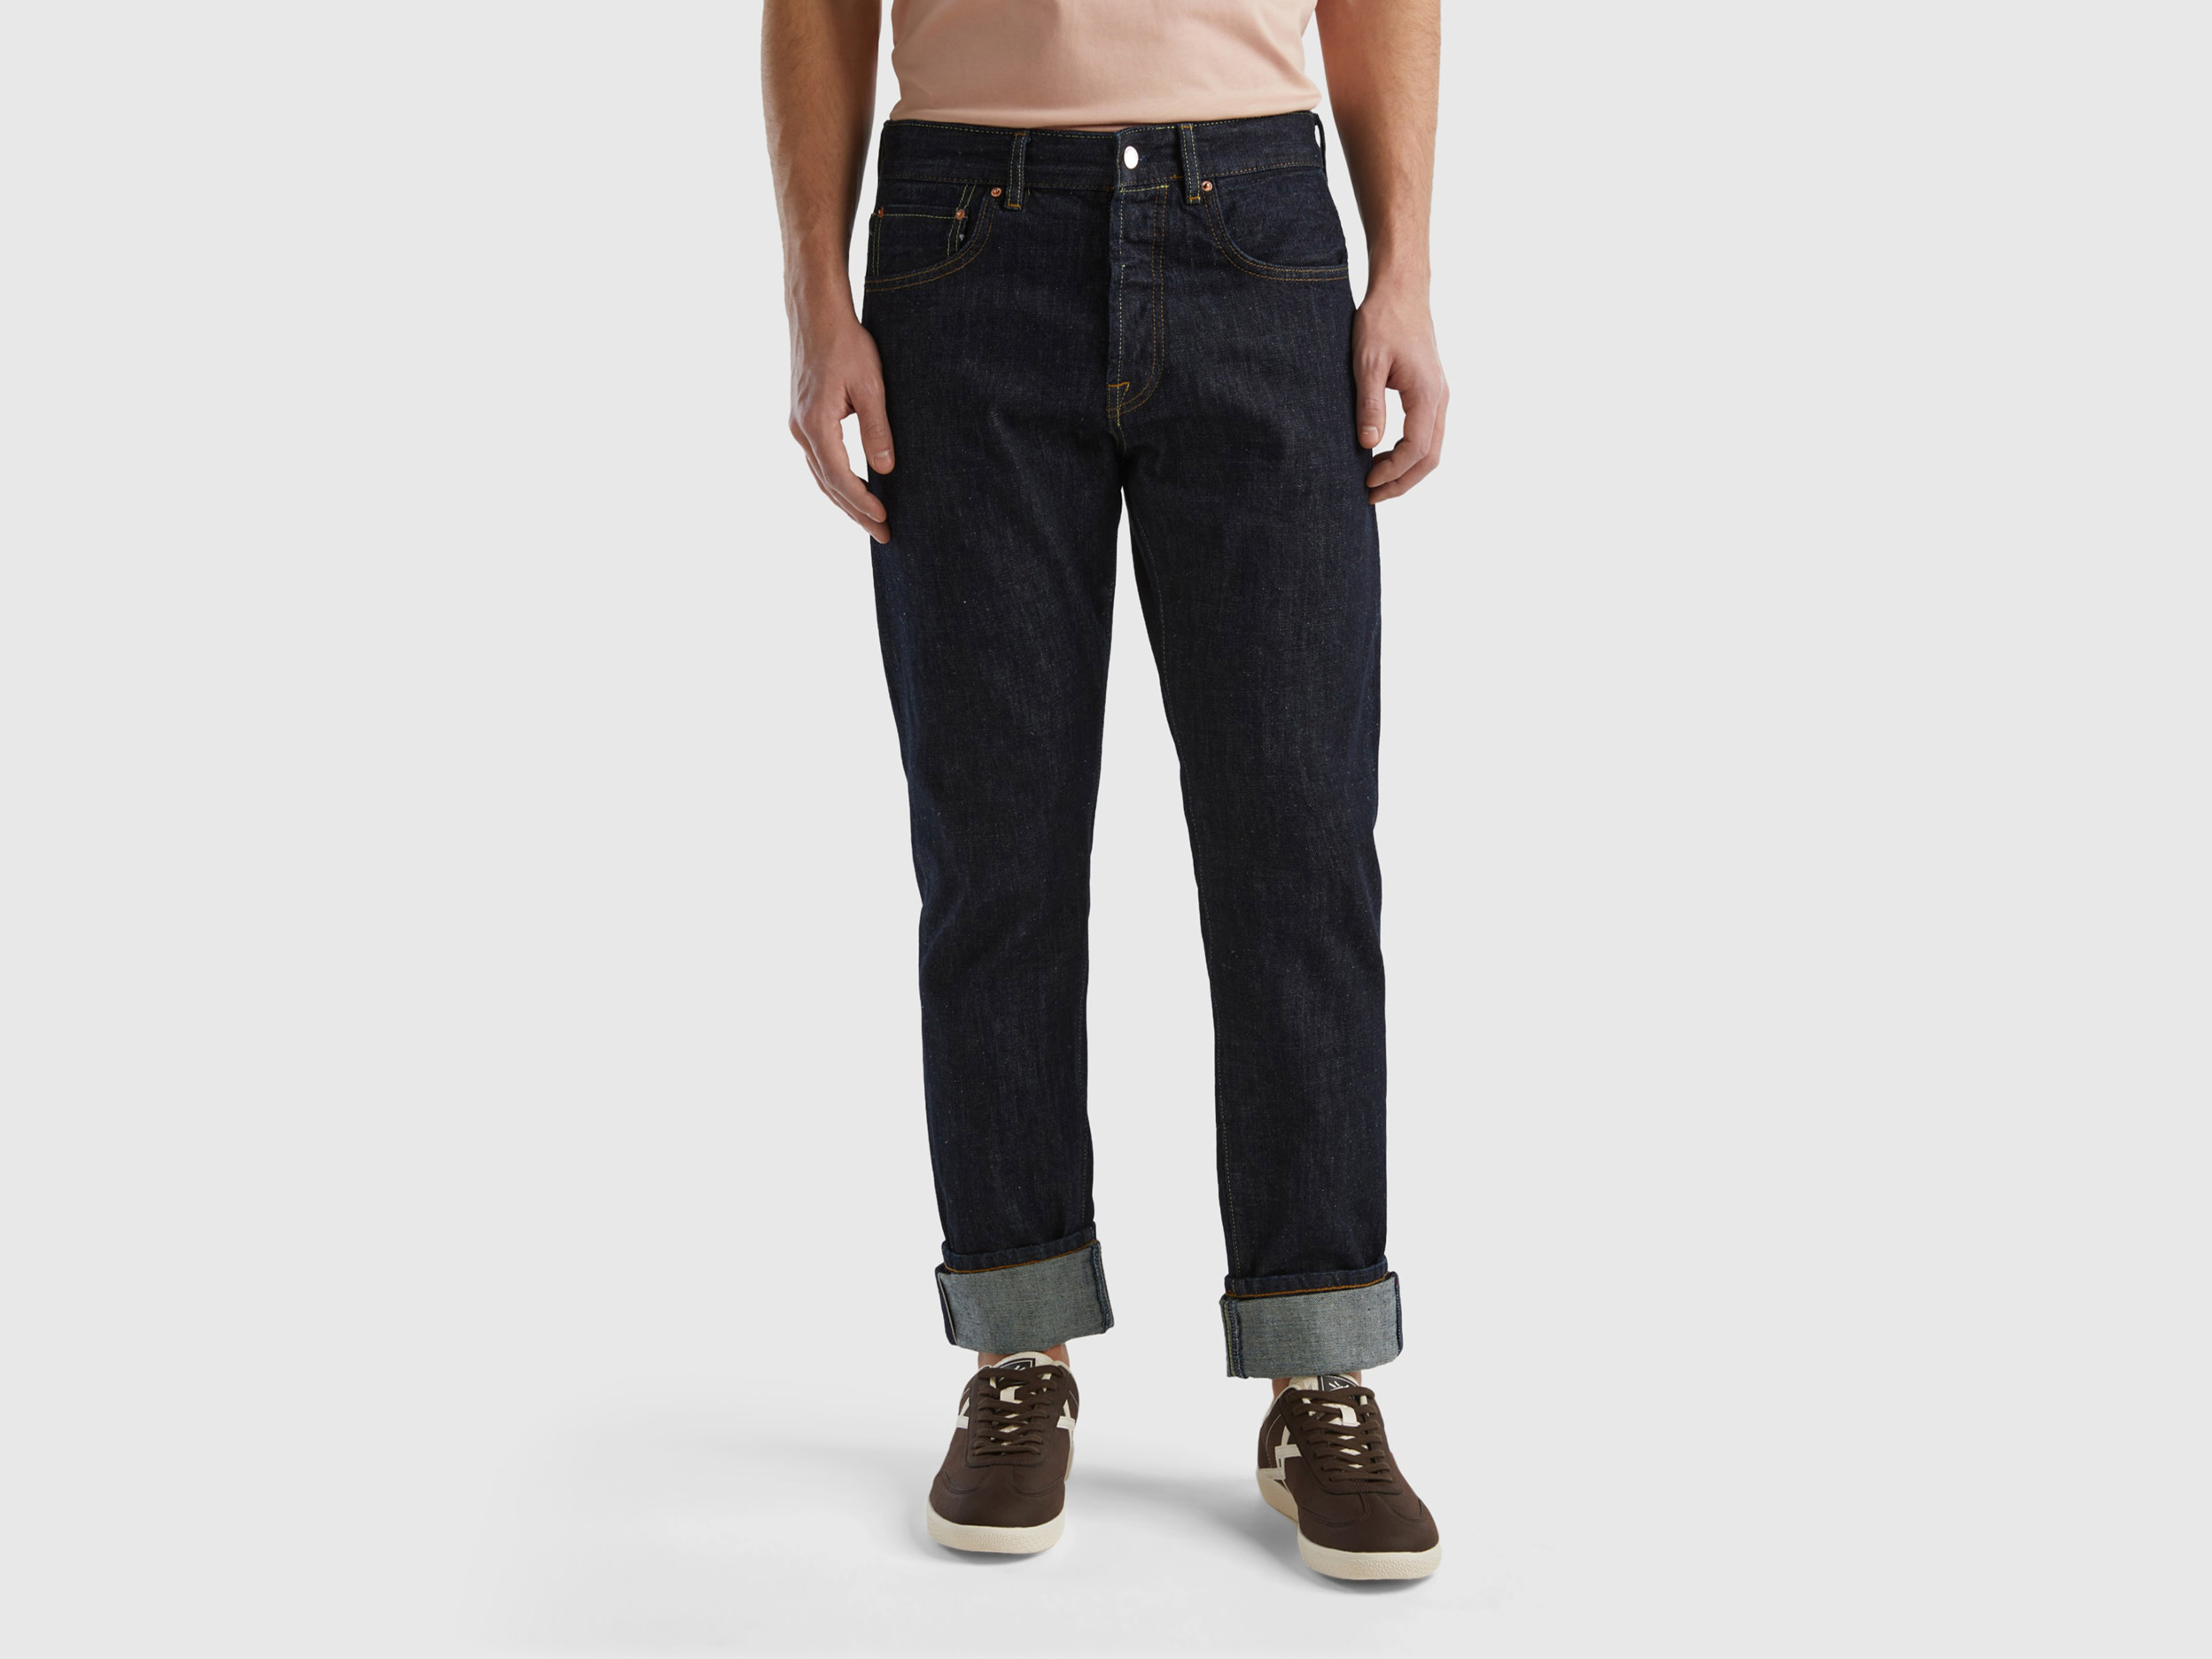 Benetton, Selvedge Denim Jeans, size 38, Black, Men